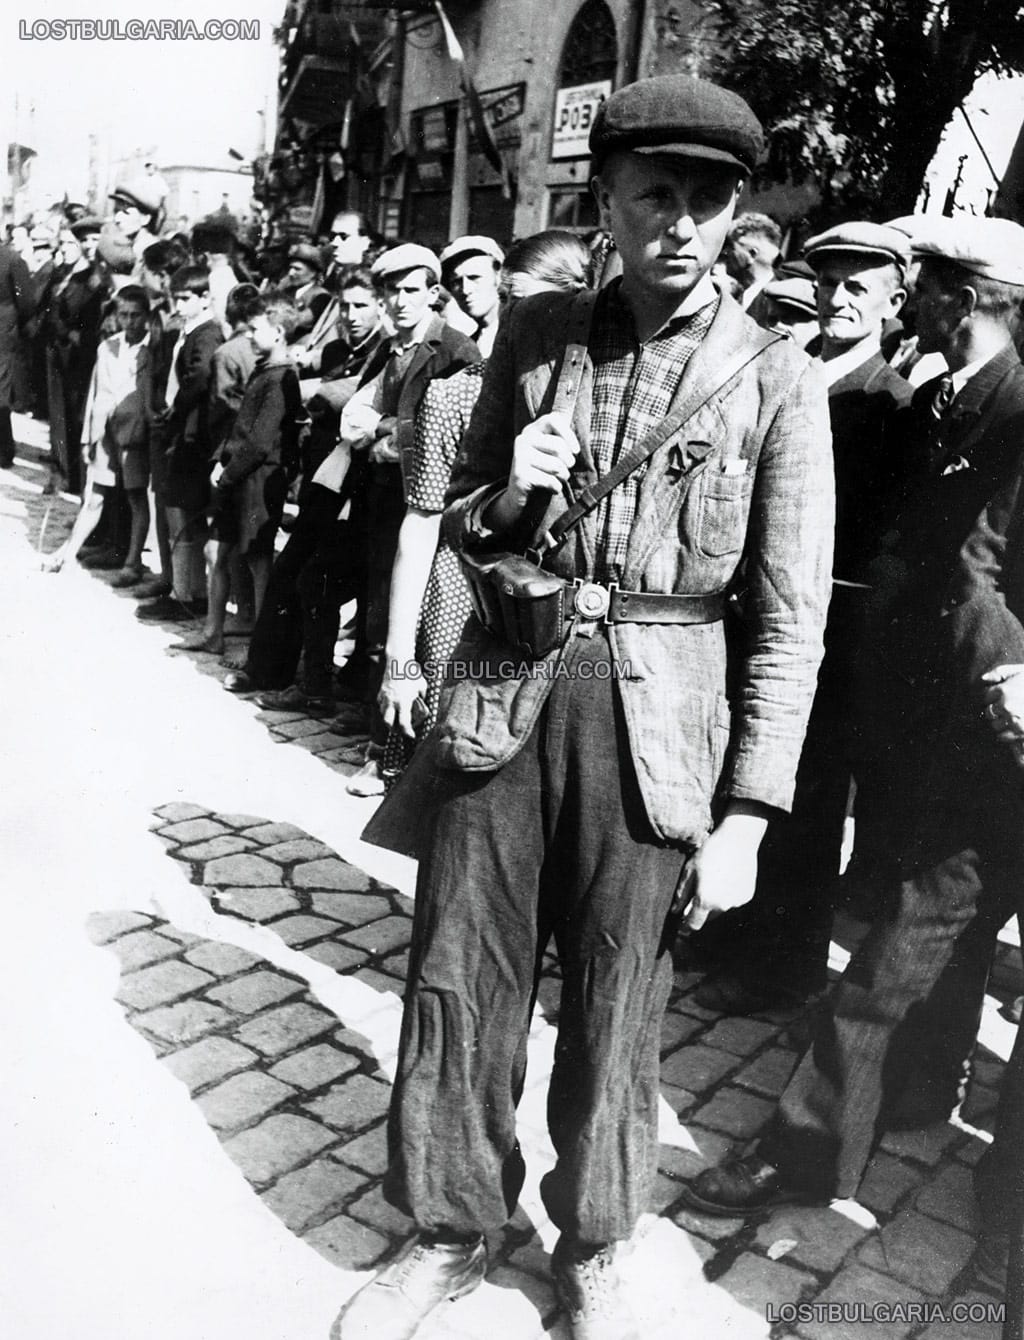 Младеж на пост в партизански кордон за посрещането на РККА (Рабоче-крестьянская красная армия), известна като Червената армия в Пловдив, около 9 септември 1944 г.